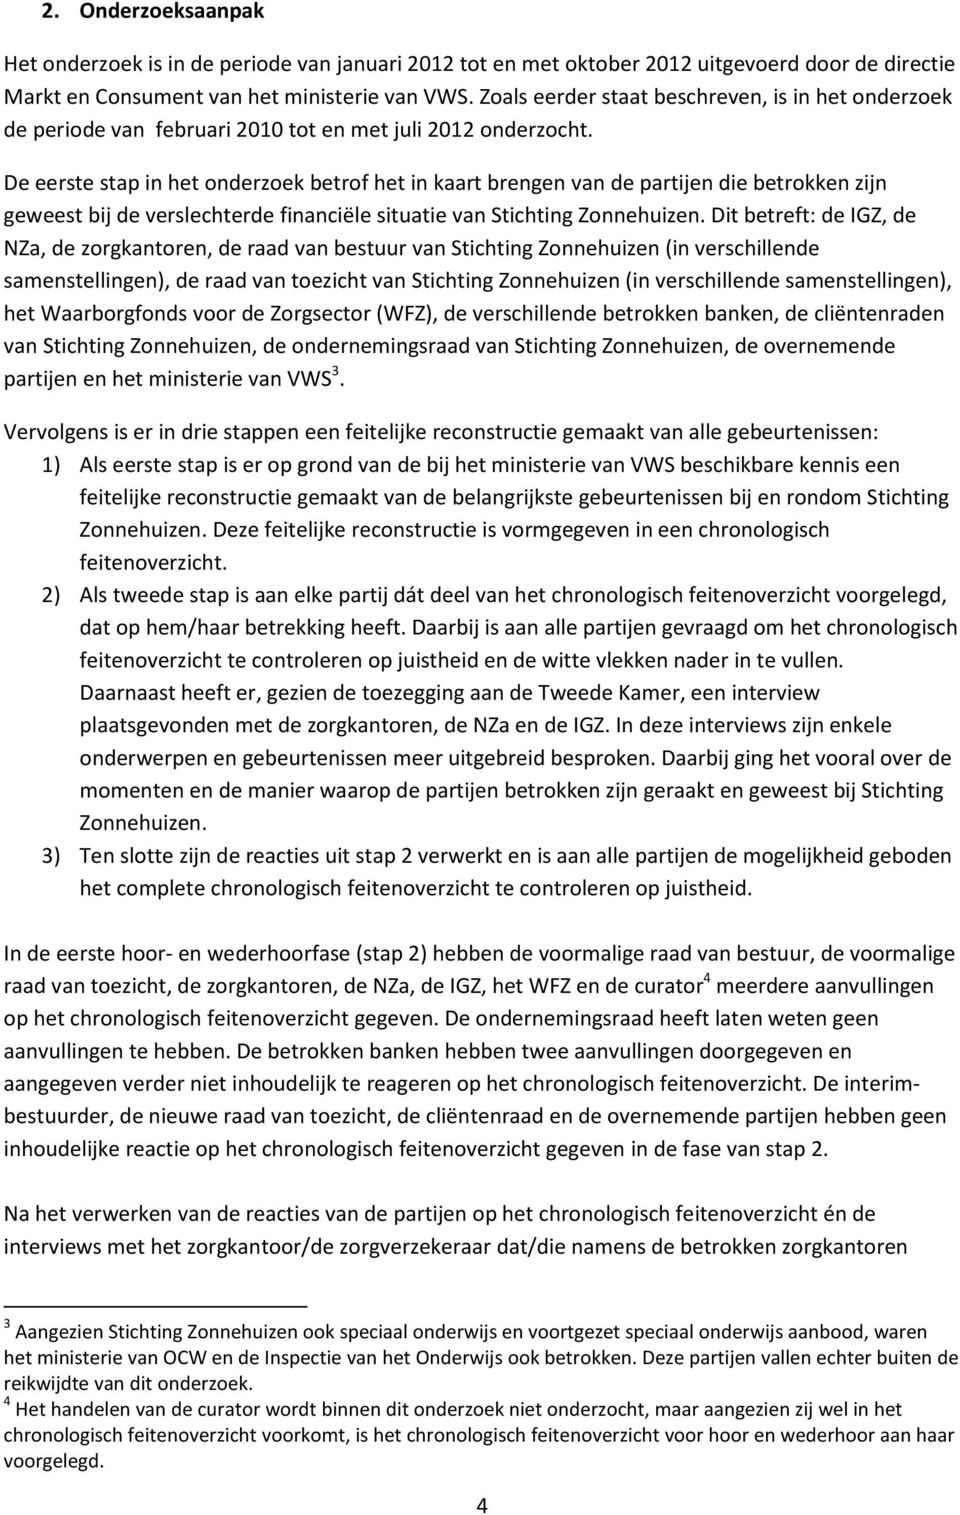 De eerste stap in het onderzoek betrof het in kaart brengen van de partijen die betrokken zijn geweest bij de verslechterde financiële situatie van Stichting Zonnehuizen.